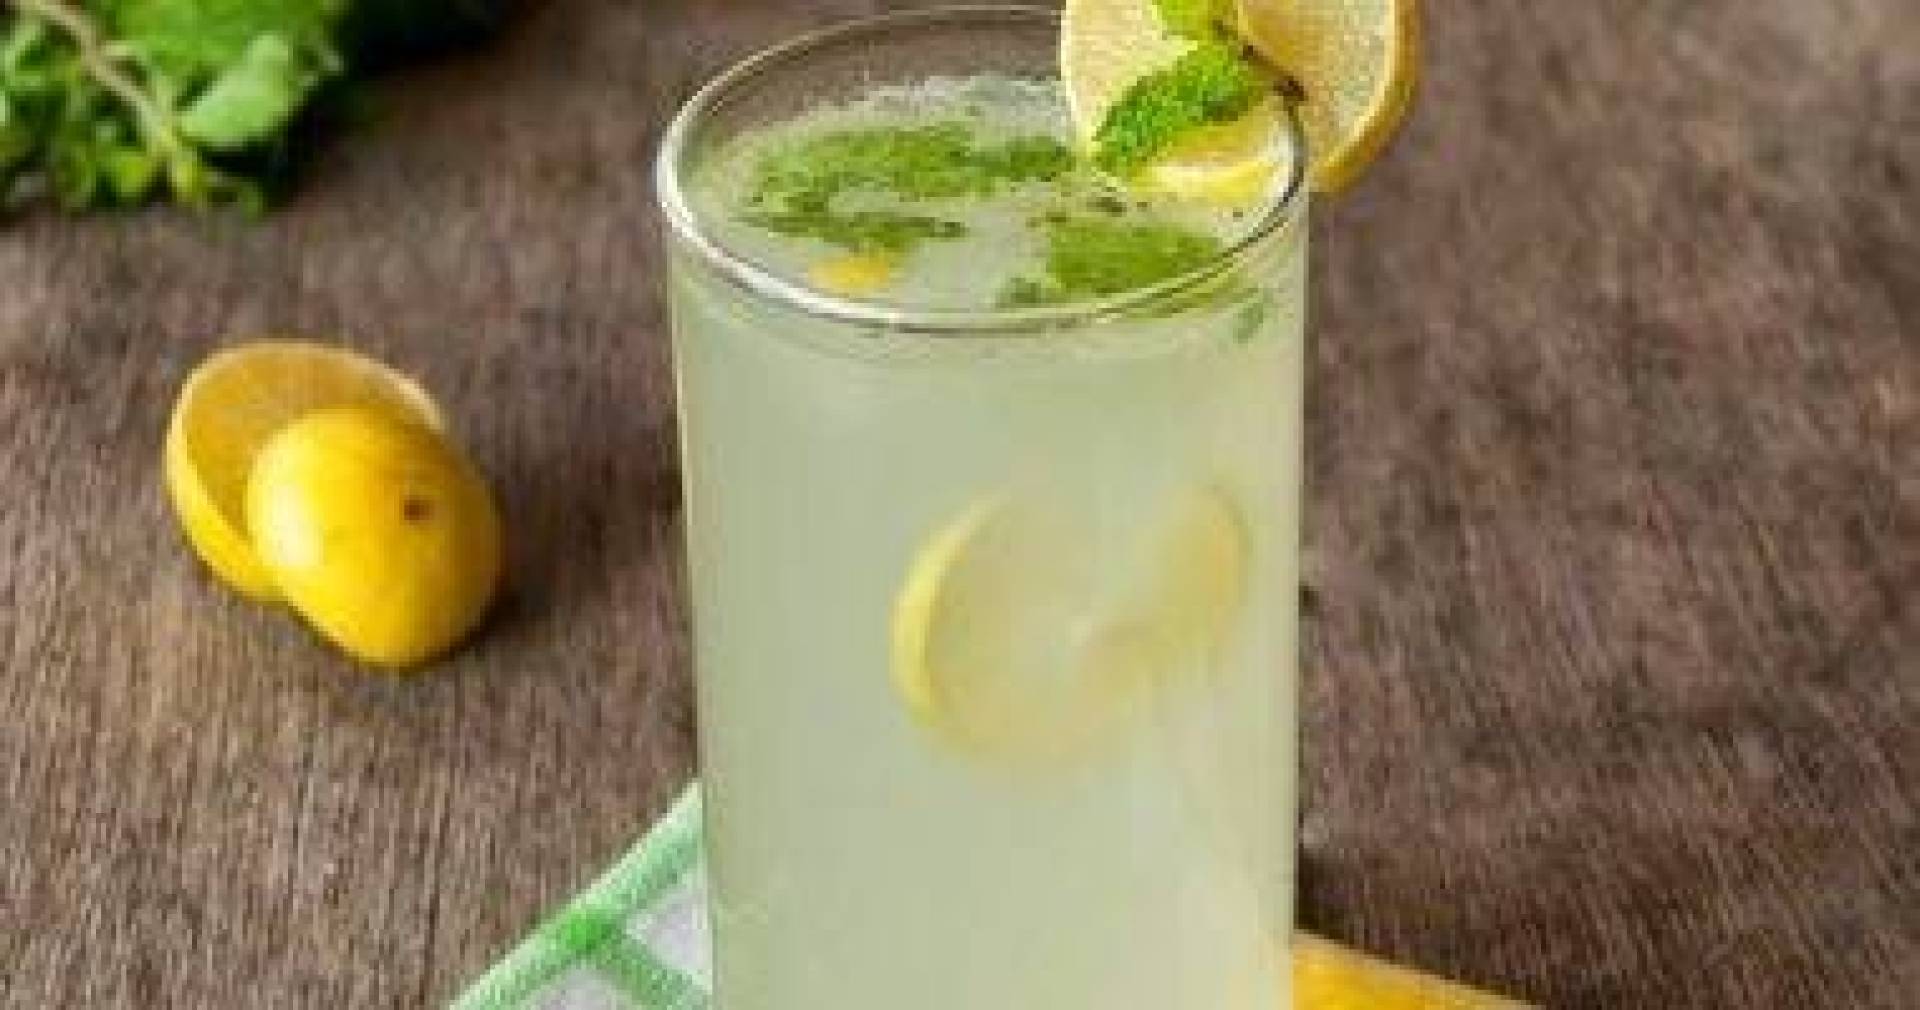 فوائد مشروب الليمون بالزنجبيل قبل النوم وتأثيره على صحة الجسم وجودة النوم